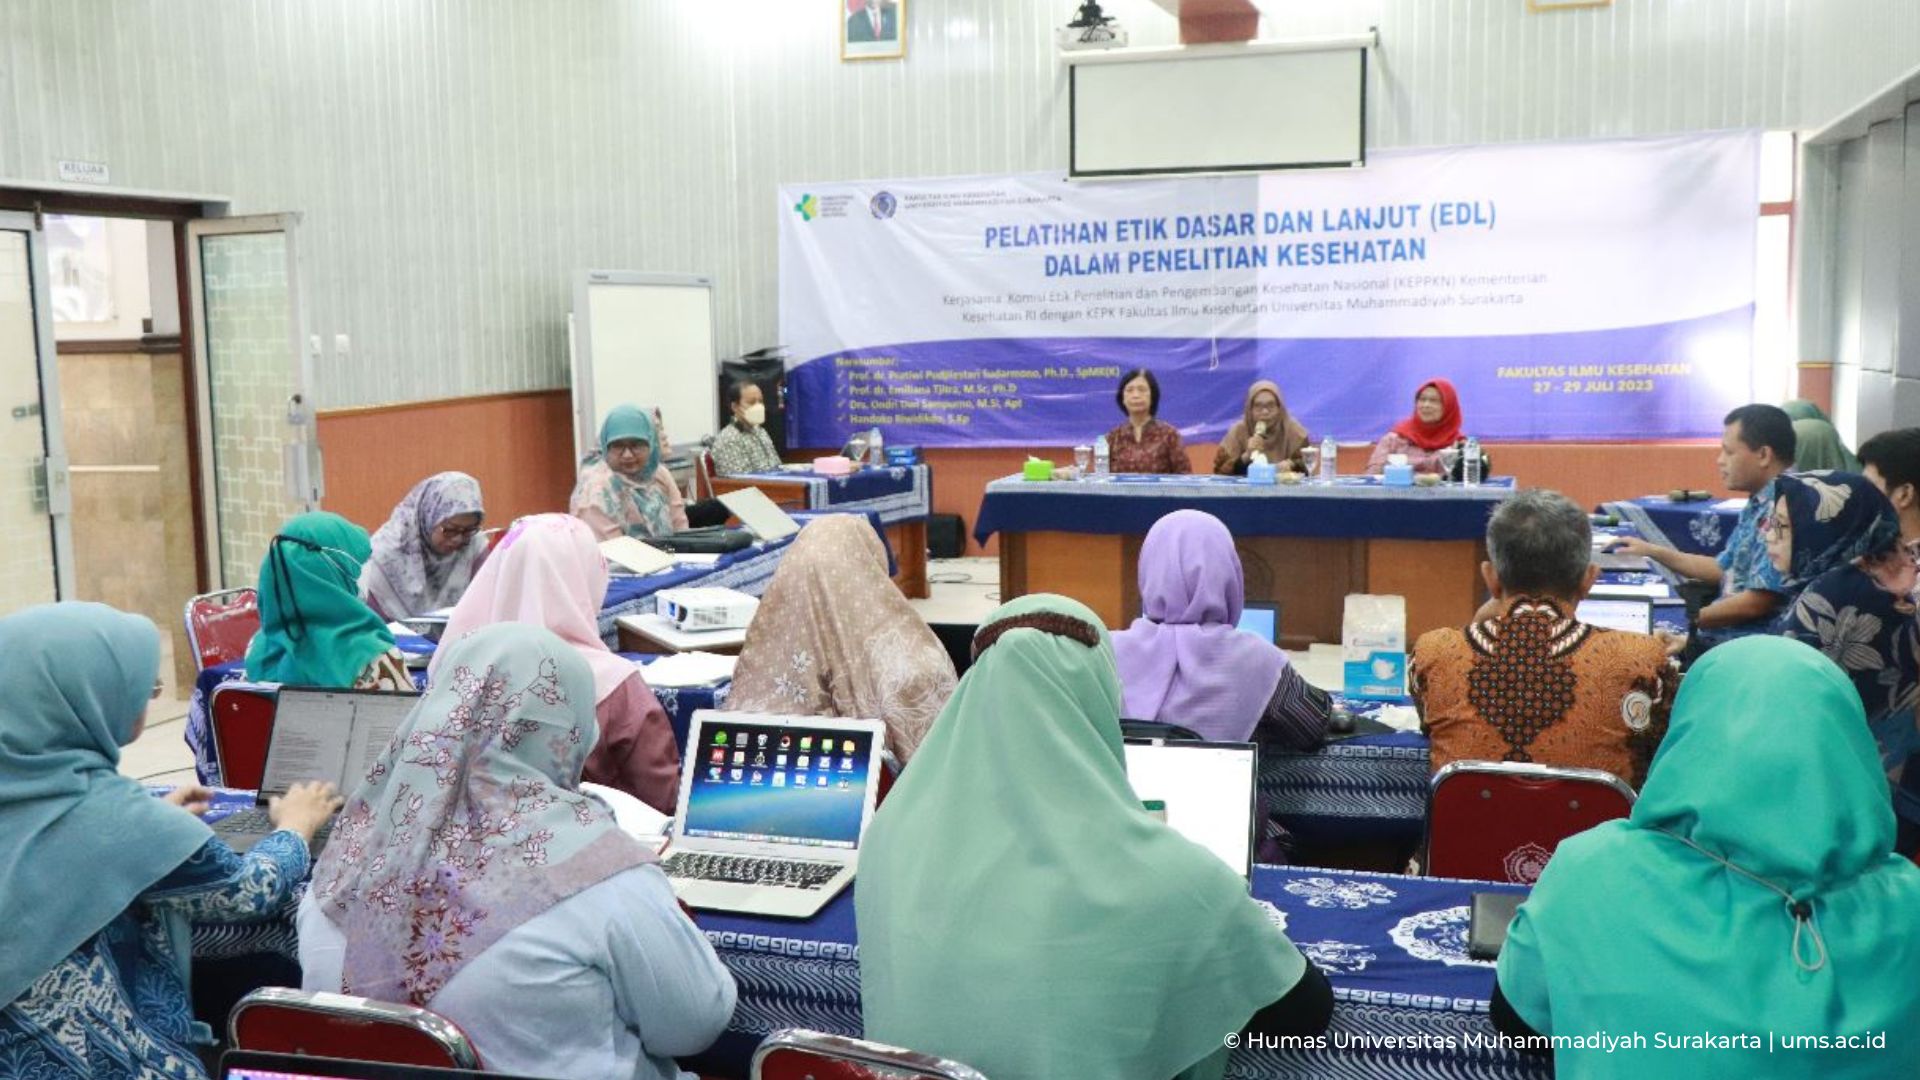 Read more about the article Merespon Perkembangan IPTEKS, FIK UMS Adakan Pelatihan Etik Dasar dan Lanjut pada Penelitian Kesehatan